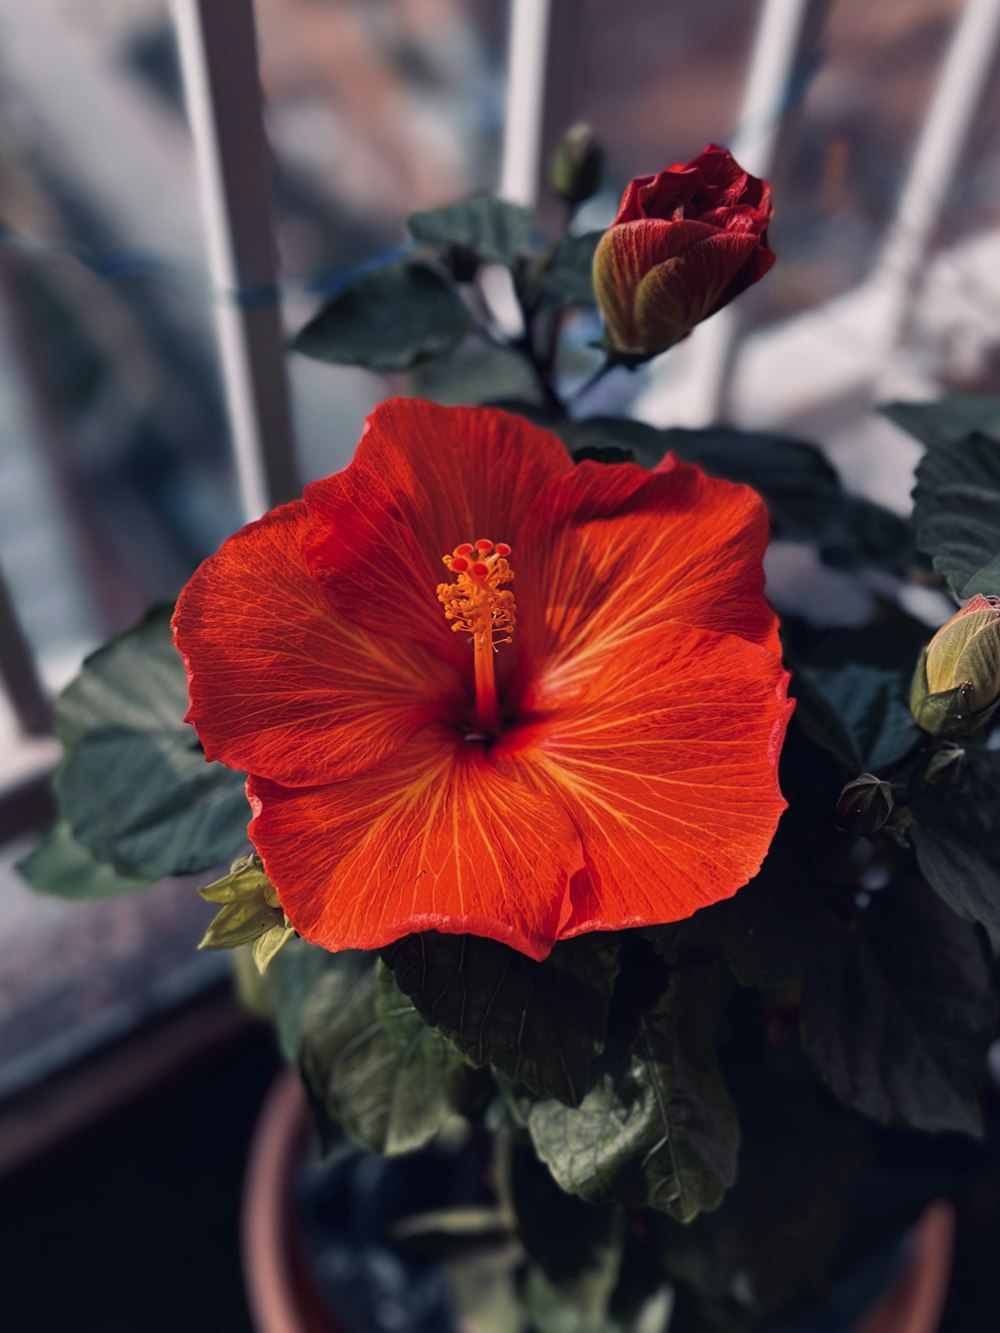 eine rote Blume in einem Topf auf einer Fensterbank